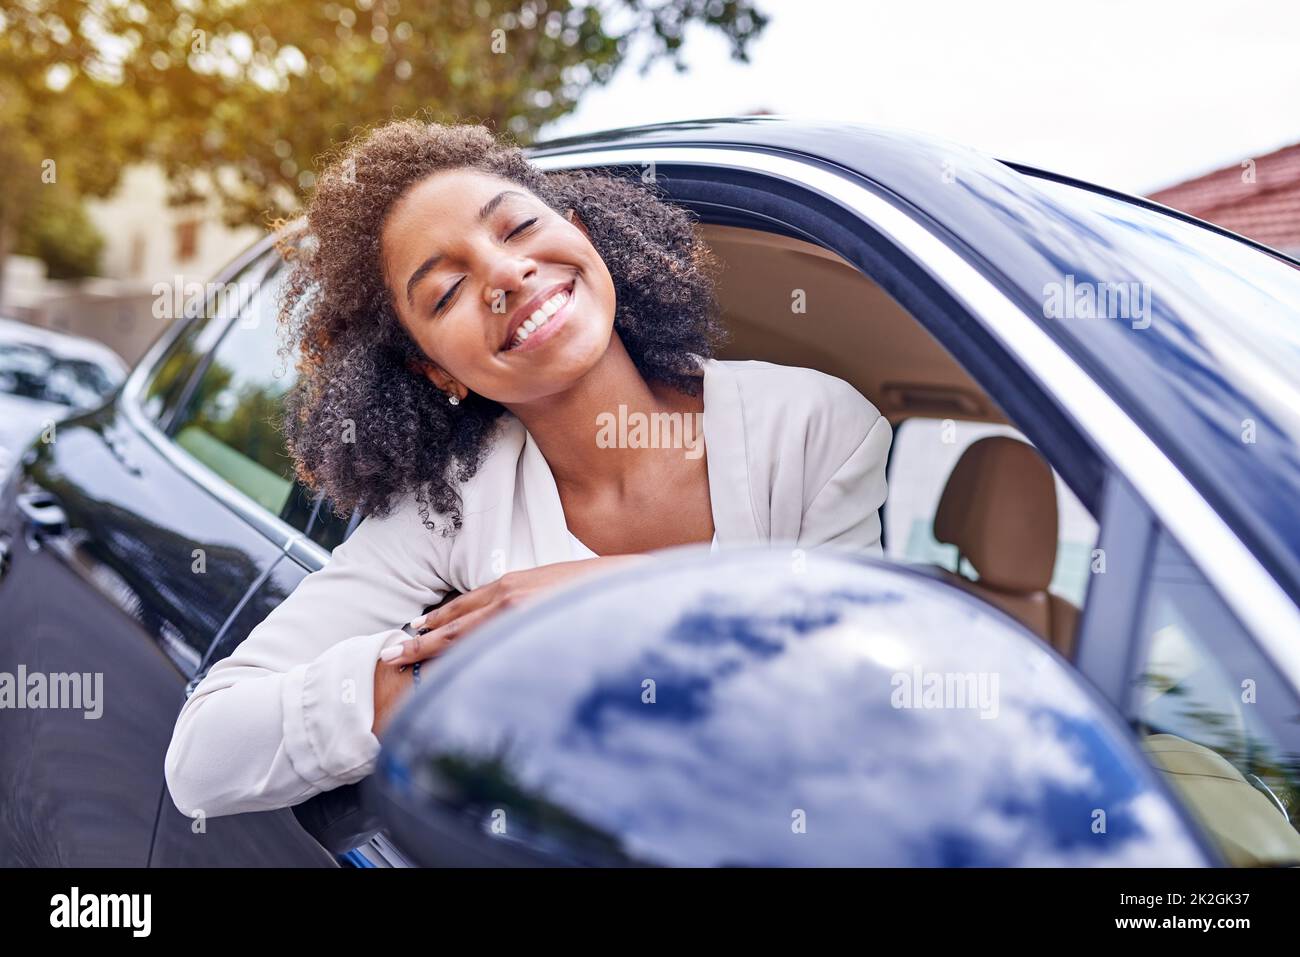 Den Wind in ihren Haaren spüren. Aufnahme einer attraktiven jungen Geschäftsfrau, die sich aus ihrem Fenster lehnte, während sie am Morgen zur Arbeit fuhr. Stockfoto